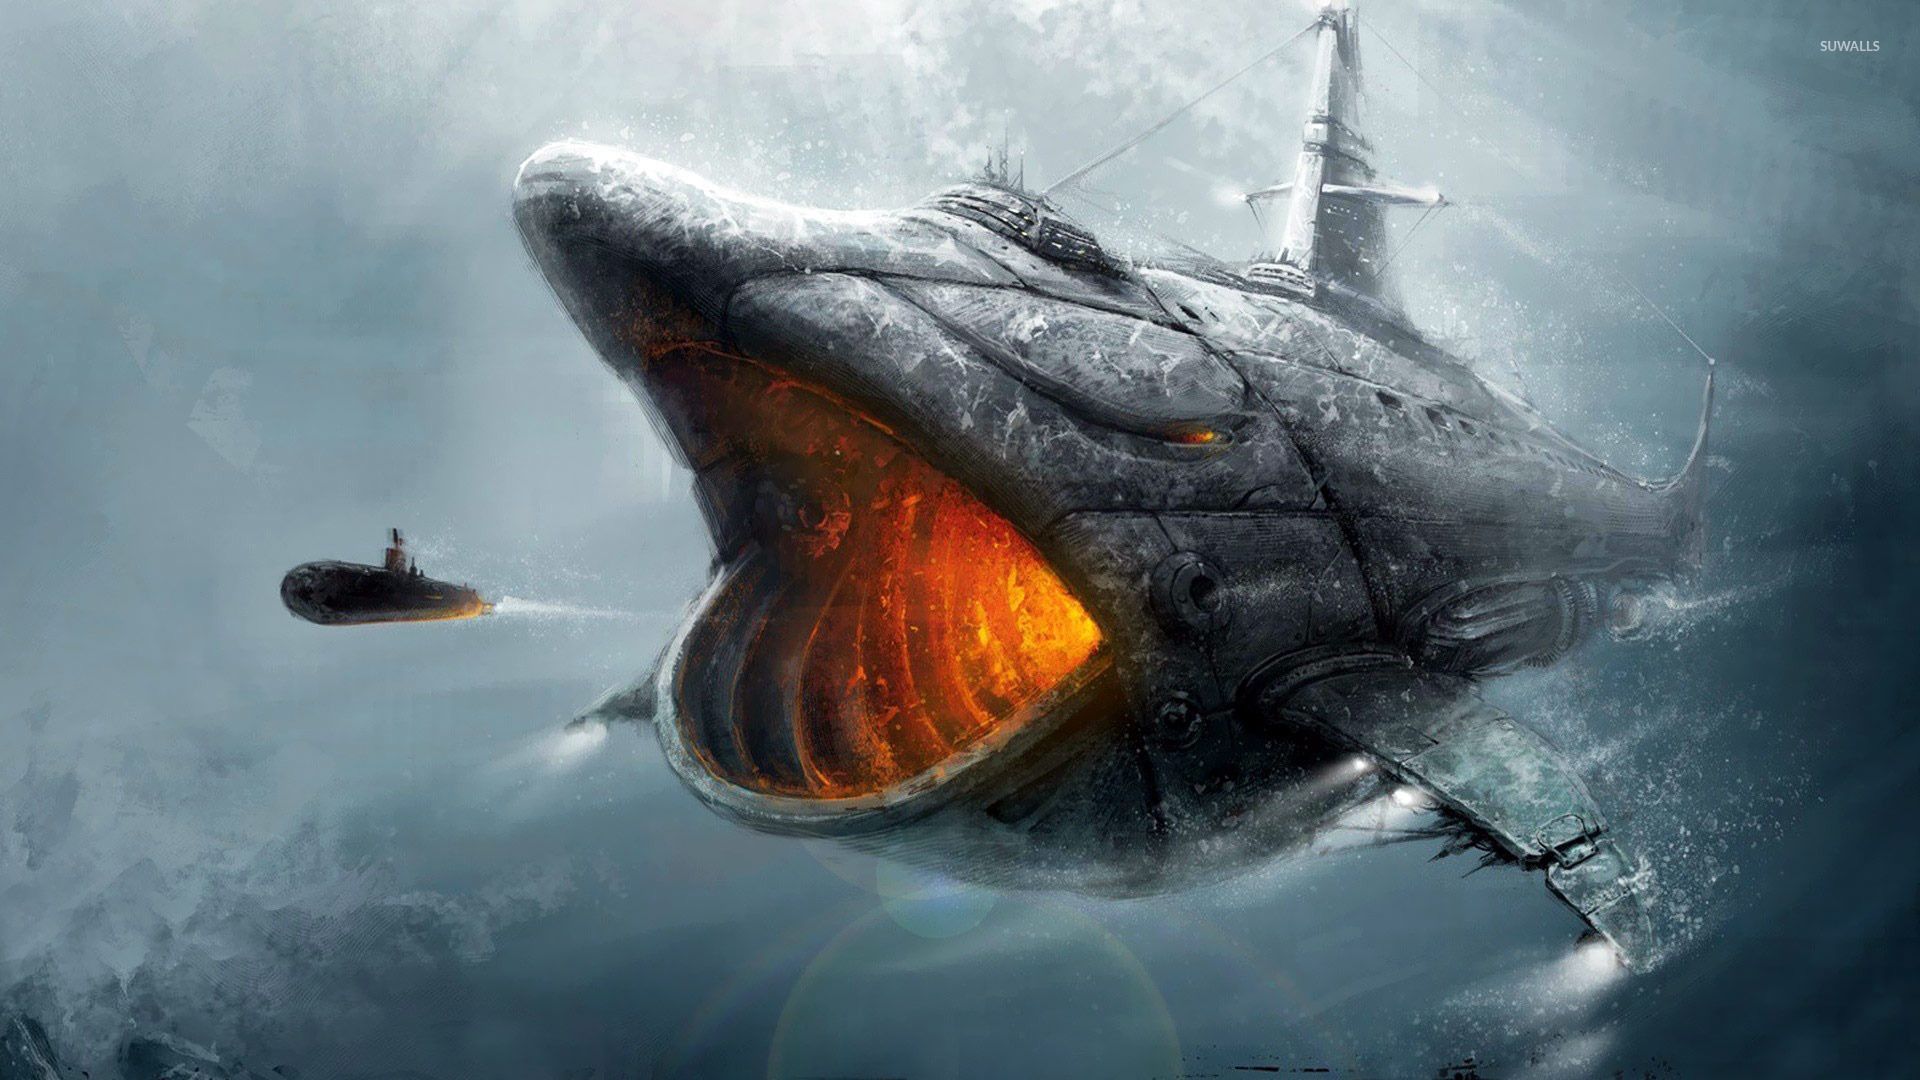  بک گراند منحصر به فرد و دیدنی از  زیردریایی به همراهی کوسه بزرگ